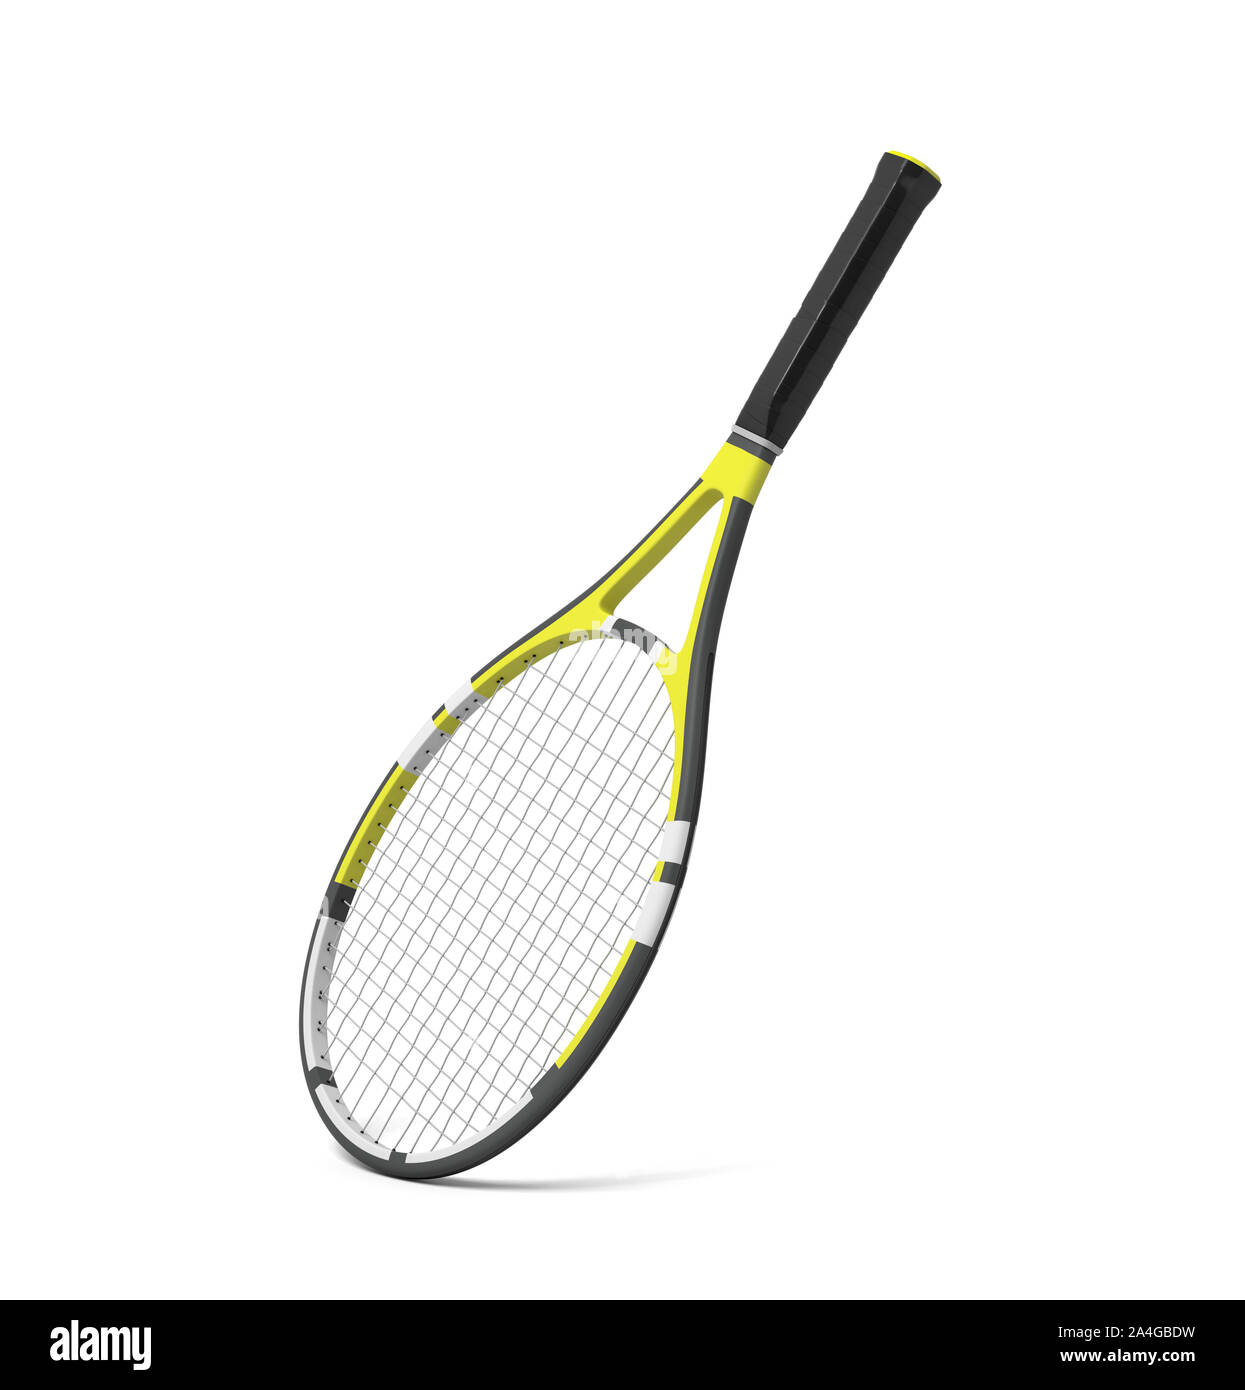 Le rendu 3D d'une raquette de tennis professionnel avec rayures noires et jaunes. Banque D'Images